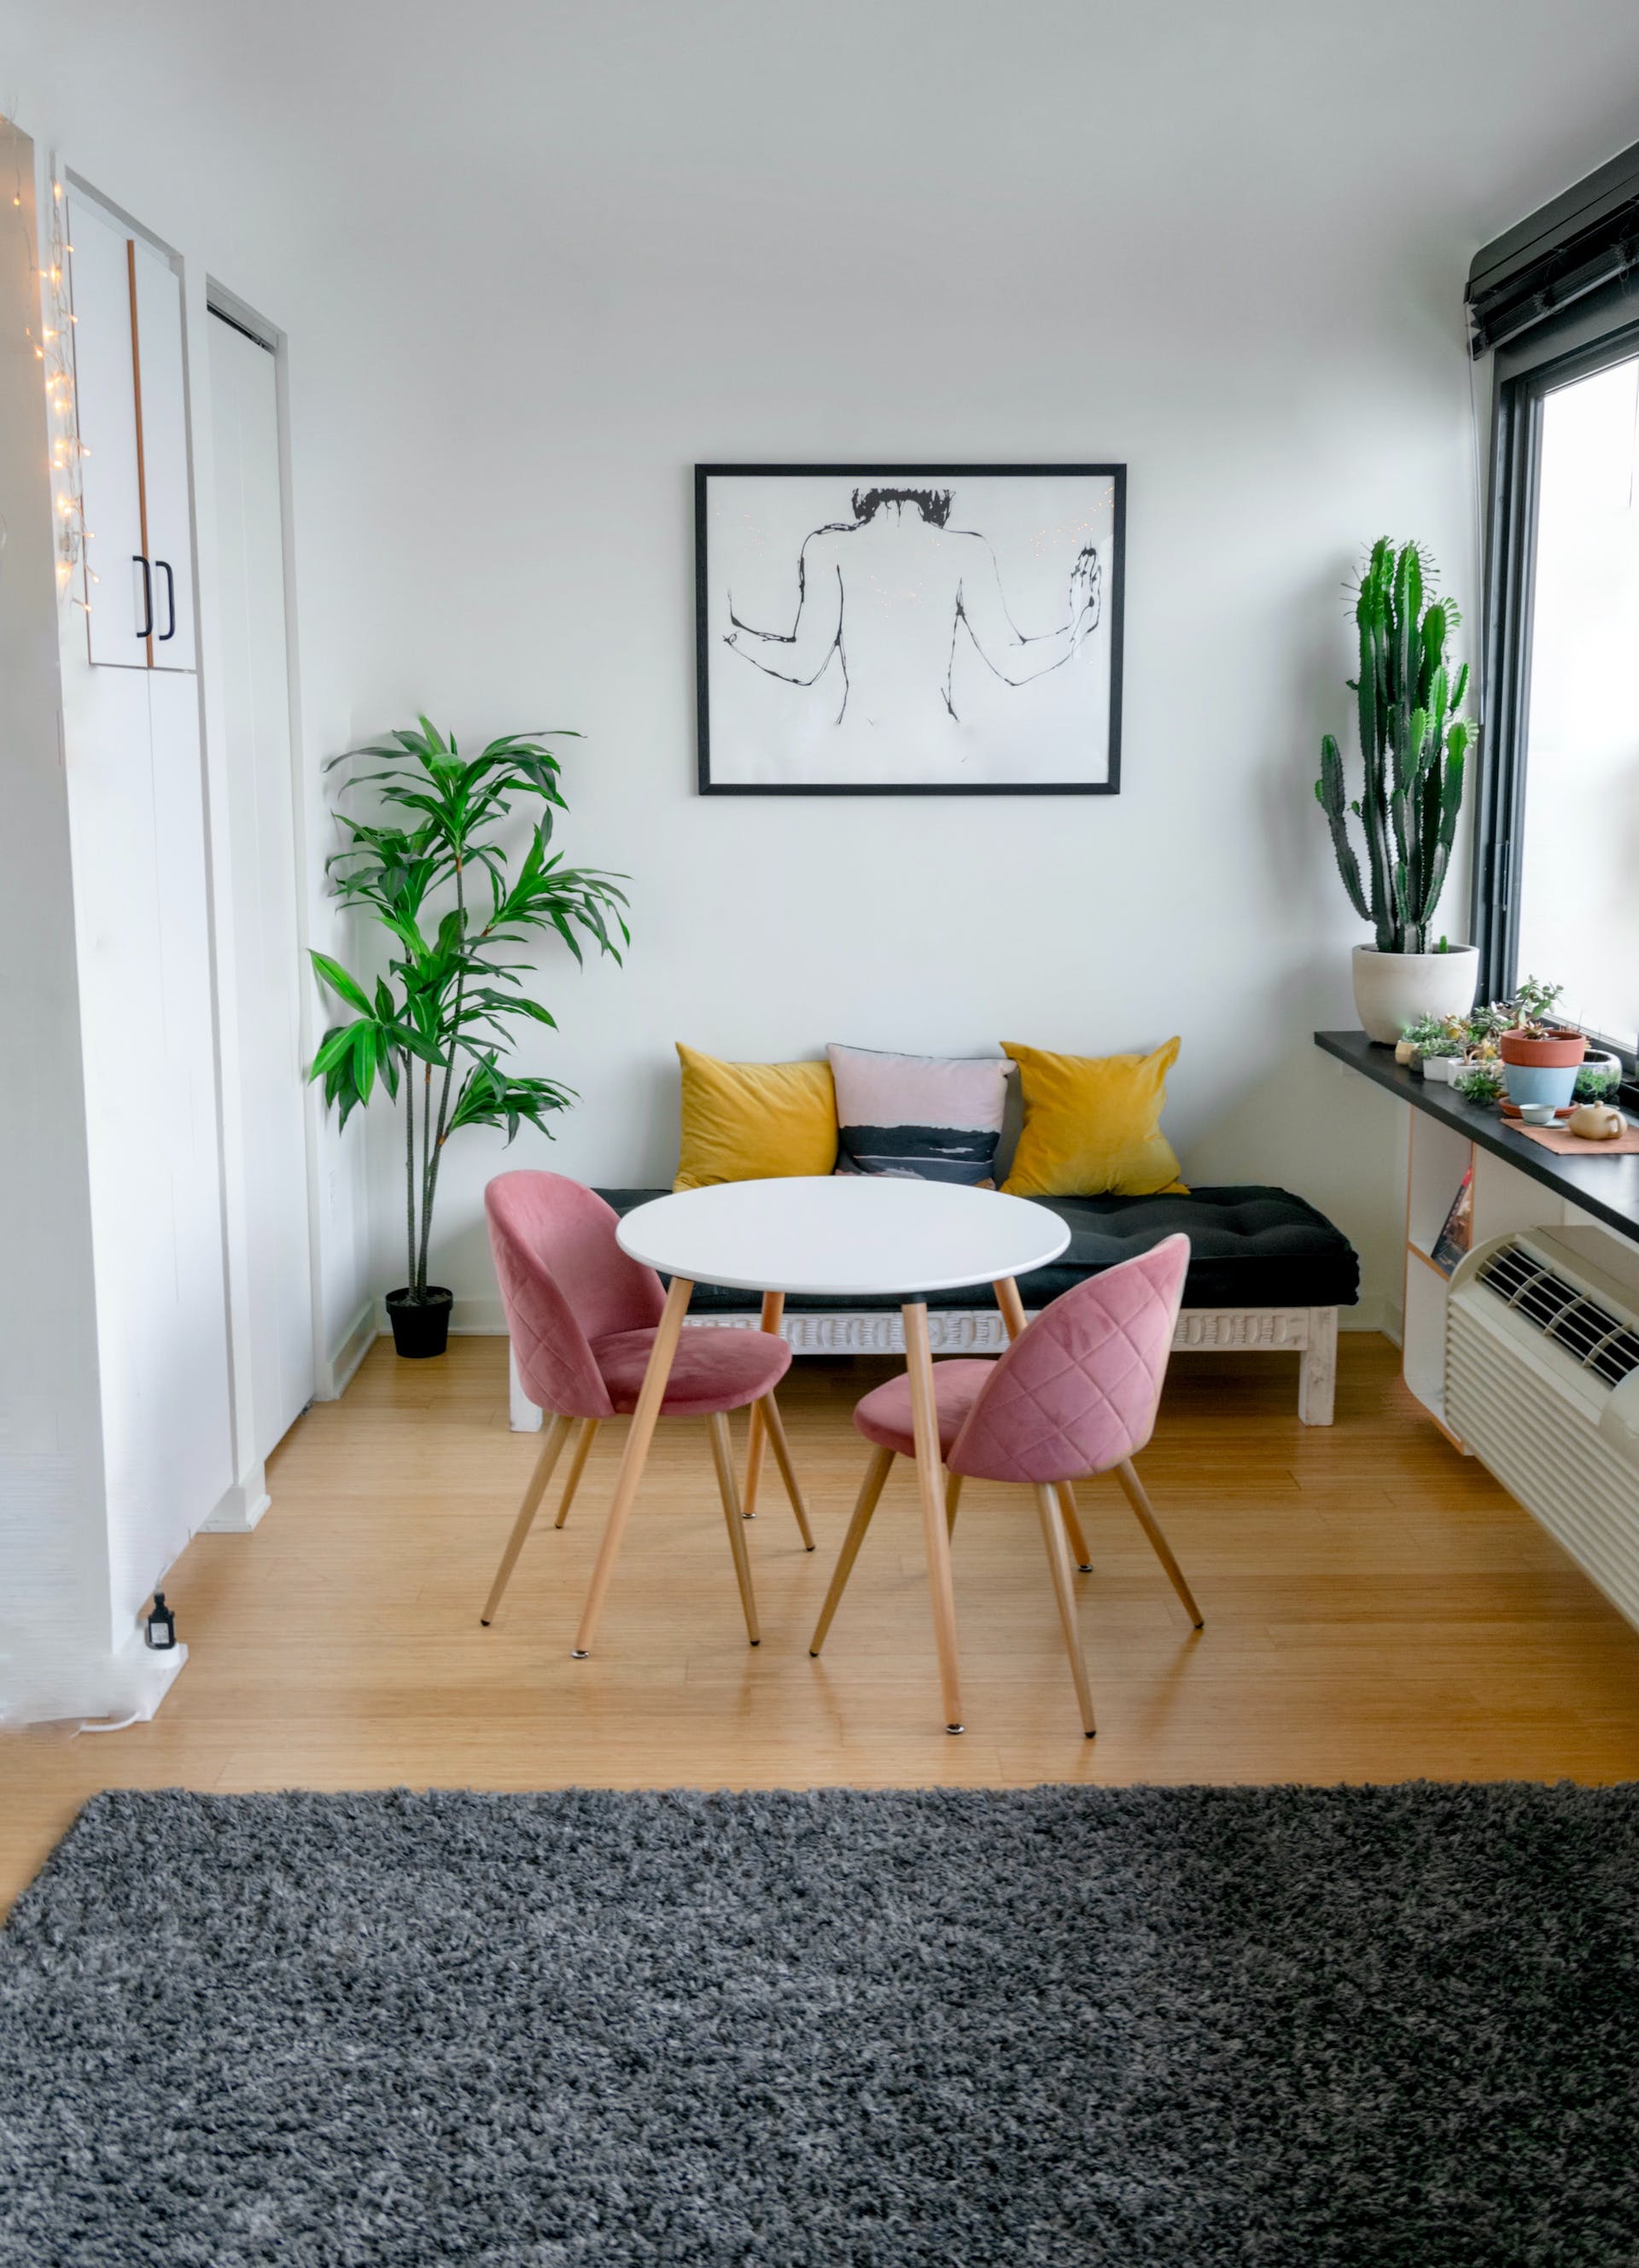 Appartement confortable | Source : Pexels